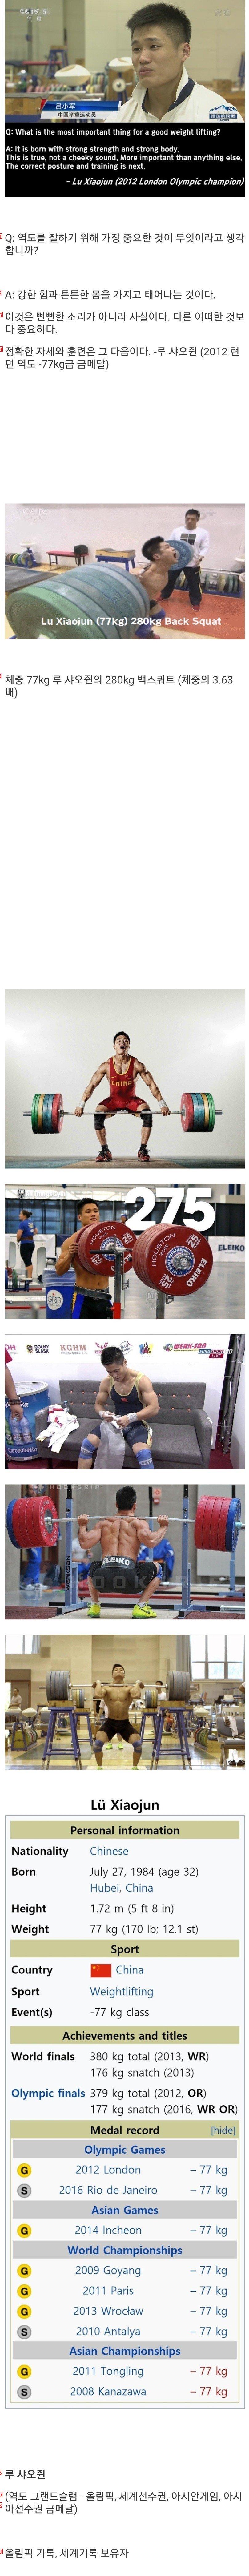 Chinese weightlifting hero Lu Xiaojun drug positivejpg